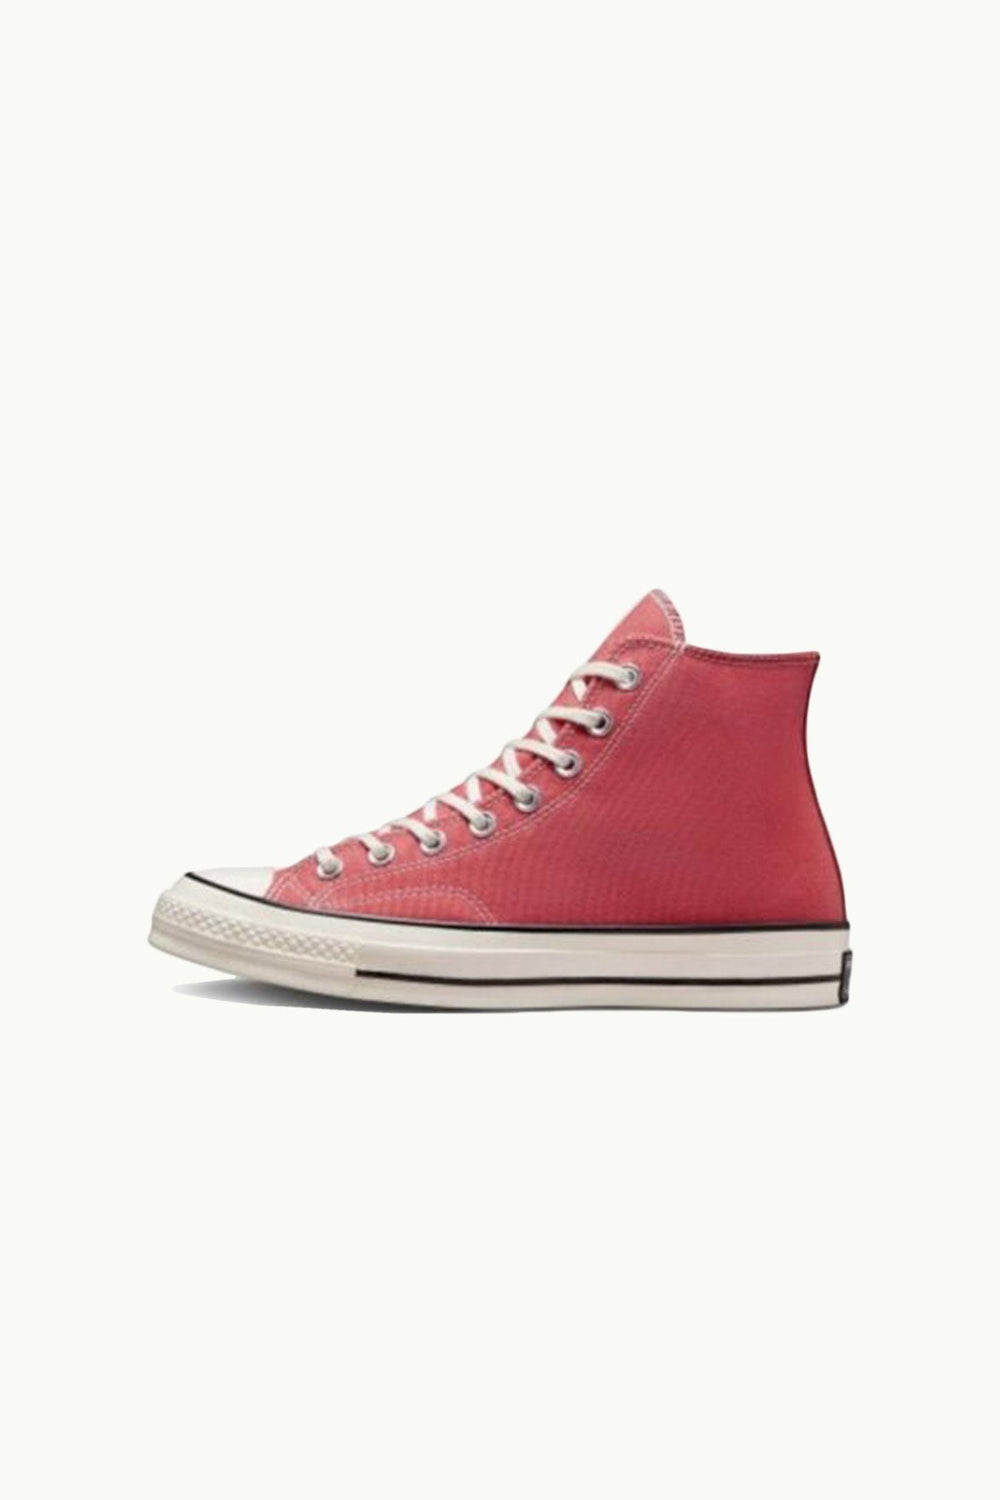 נעלי Chuck 70 בצבע ורוד קורל - Converse